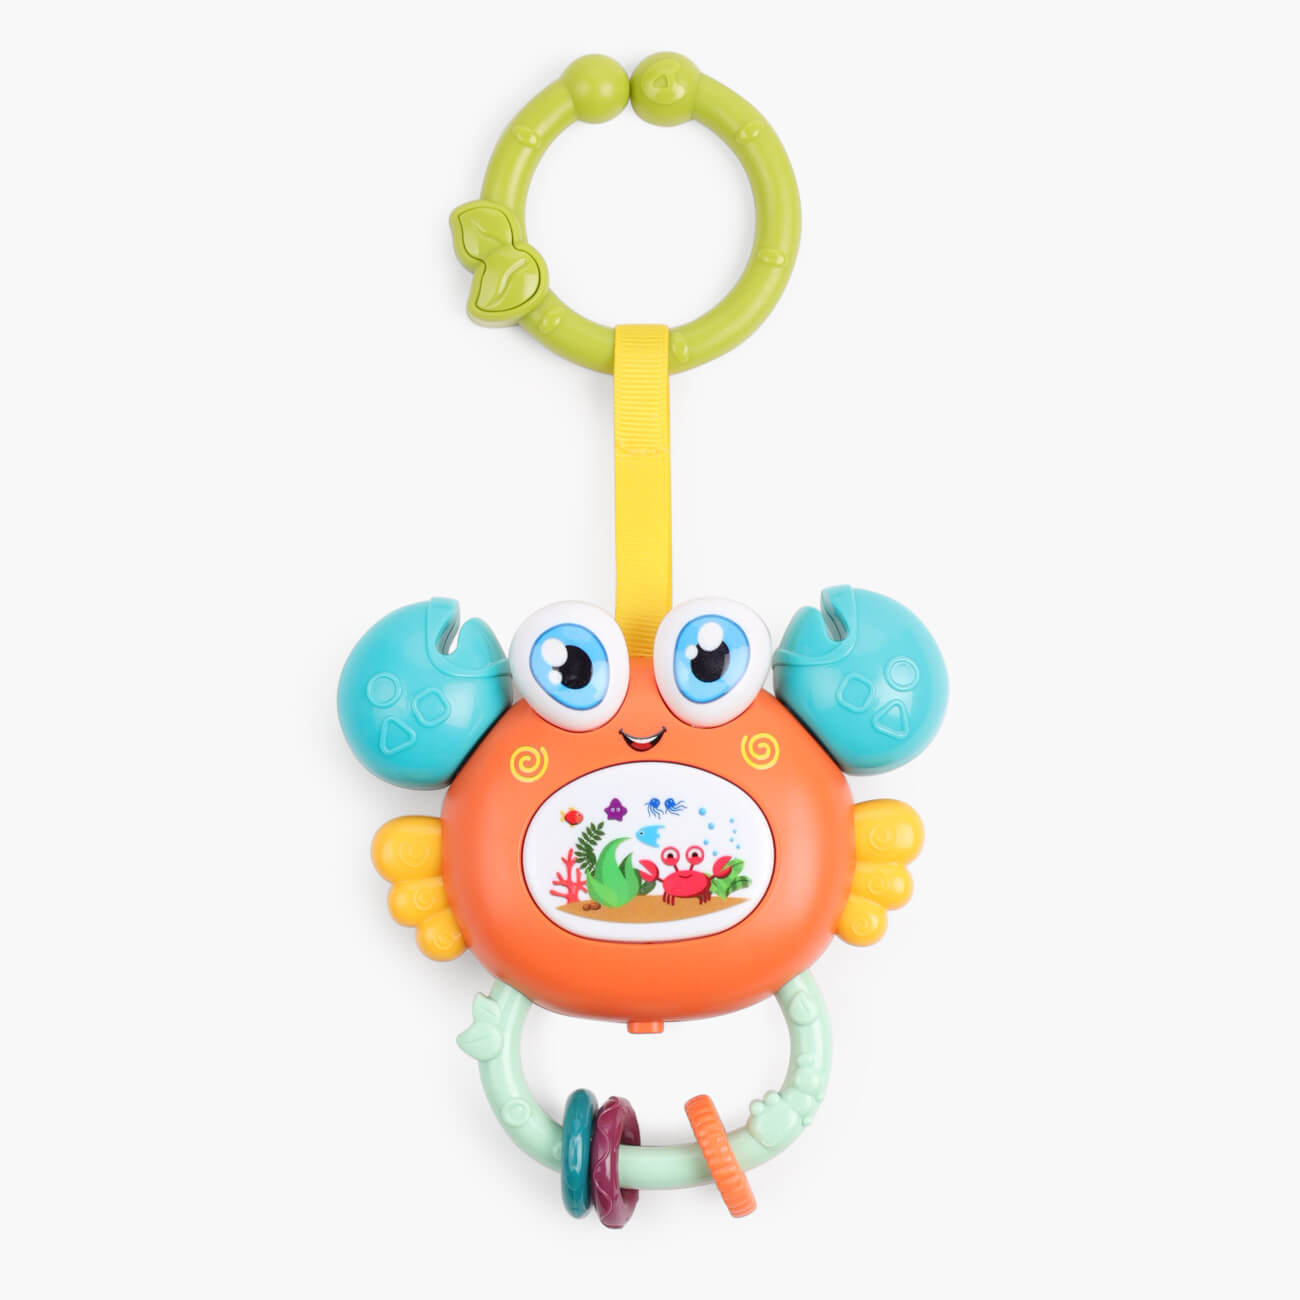 Игрушка развивающая, 11х12 см, музыкальная, пластик, оранжевый, Крабик, Aquatic animals игрушка музыкальная треугольник